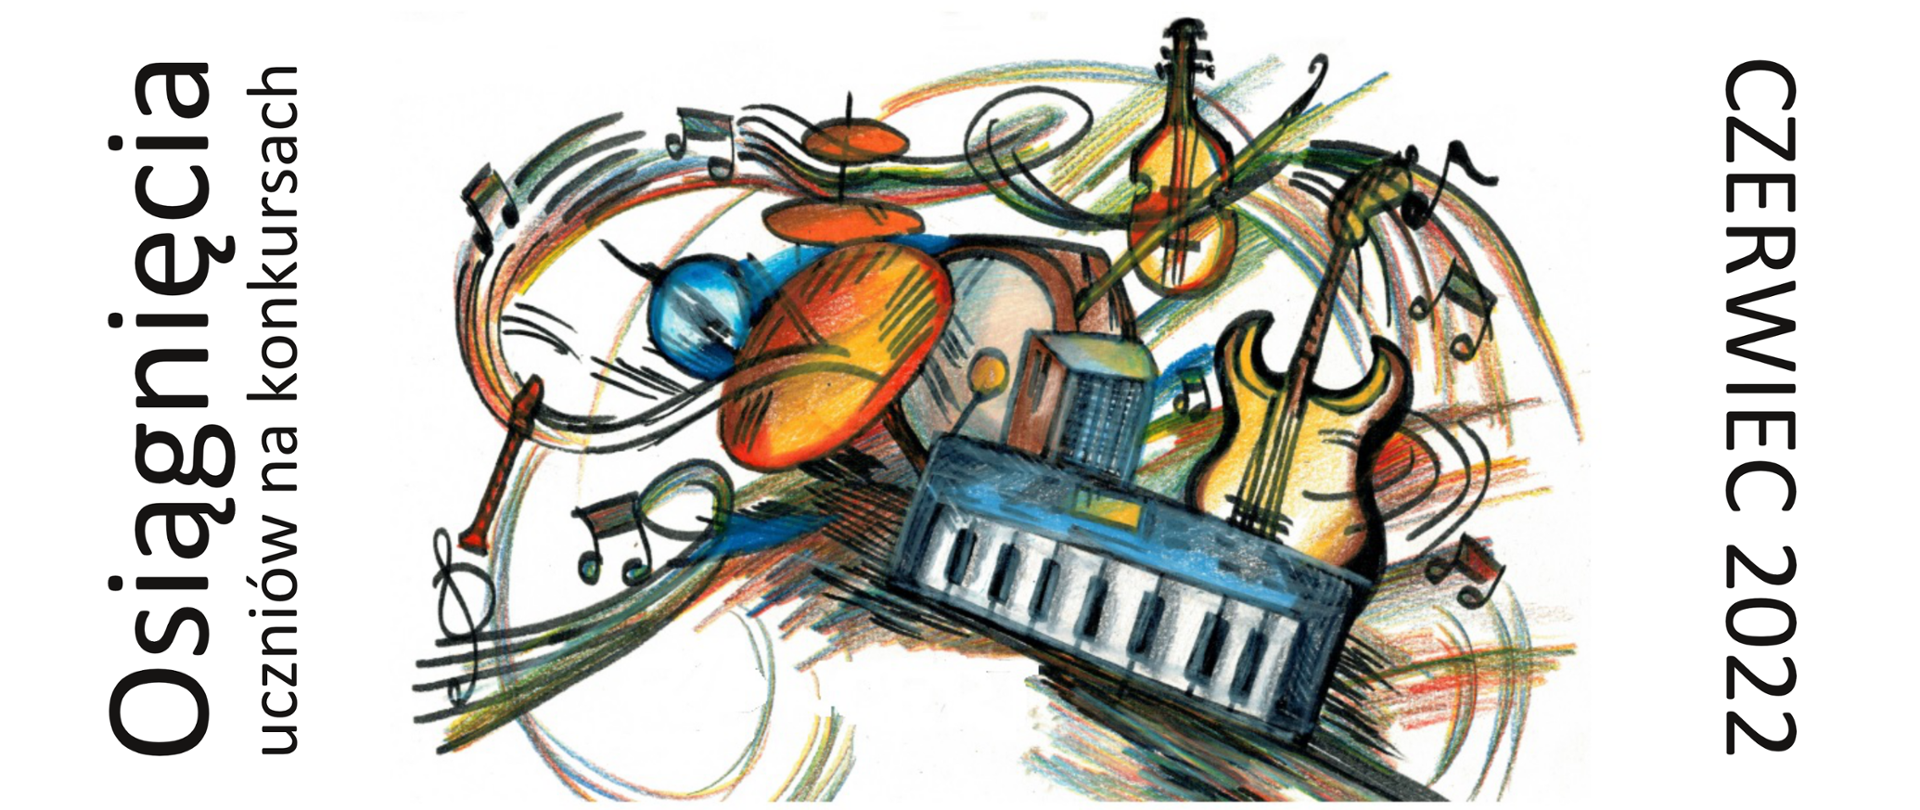 Grafika składająca się z kolorowych instrumentów tj. pianino, gitara, skrzypce, flet, perkusja, trąbka i z nut oraz czarnych napisów obróconych o 90 st. tj. Osiągnięcia uczniów na konkursach (z lewej strony) i CZERWIEC 2022 (z prawej strony)